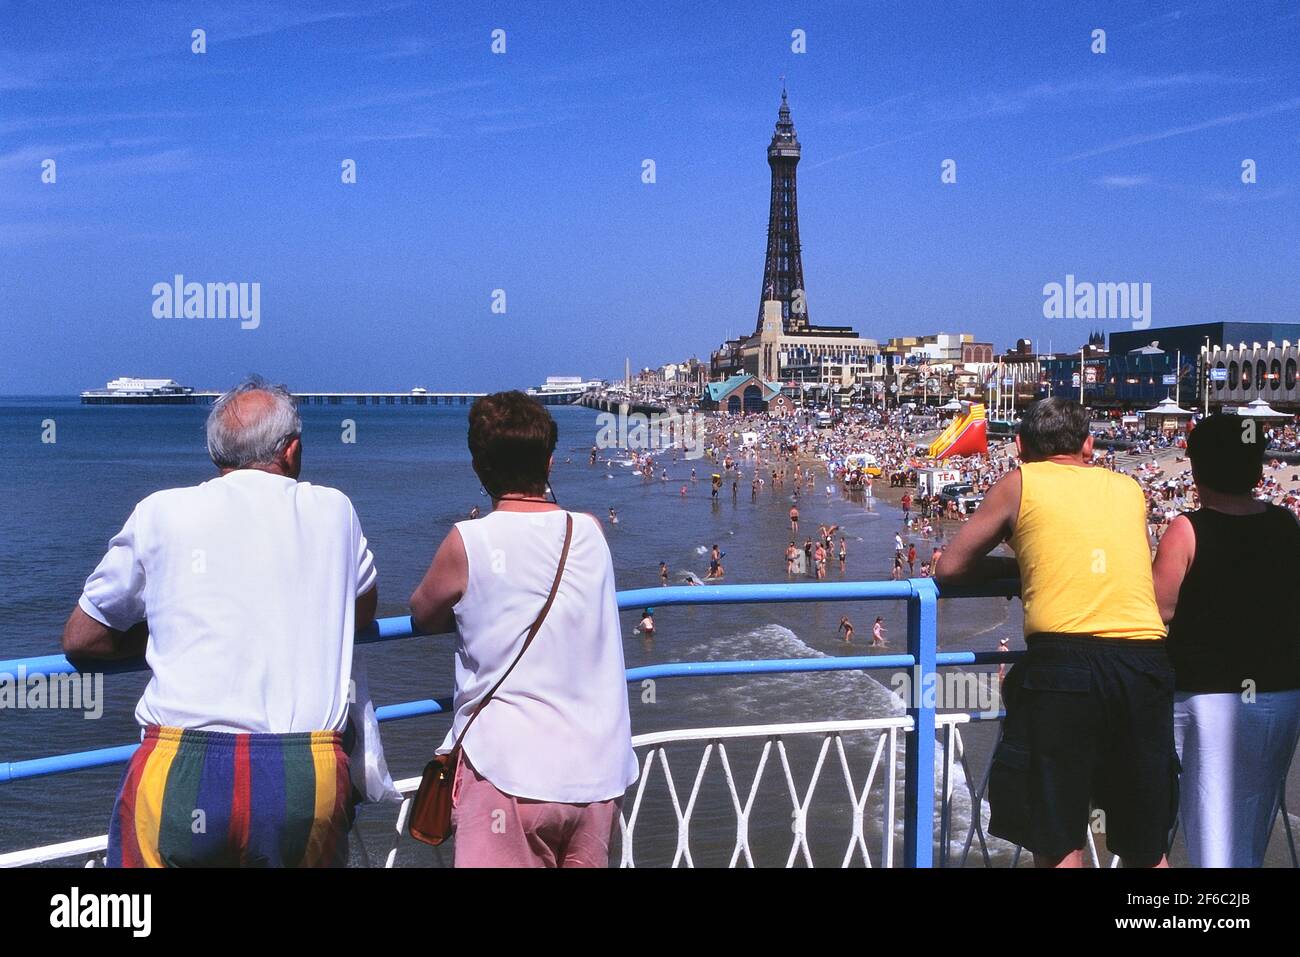 Vacanciers sur Central Pier regardant la plage, North Pier & Tower, Blackpool, Lancashire, Angleterre, Royaume-Uni Banque D'Images